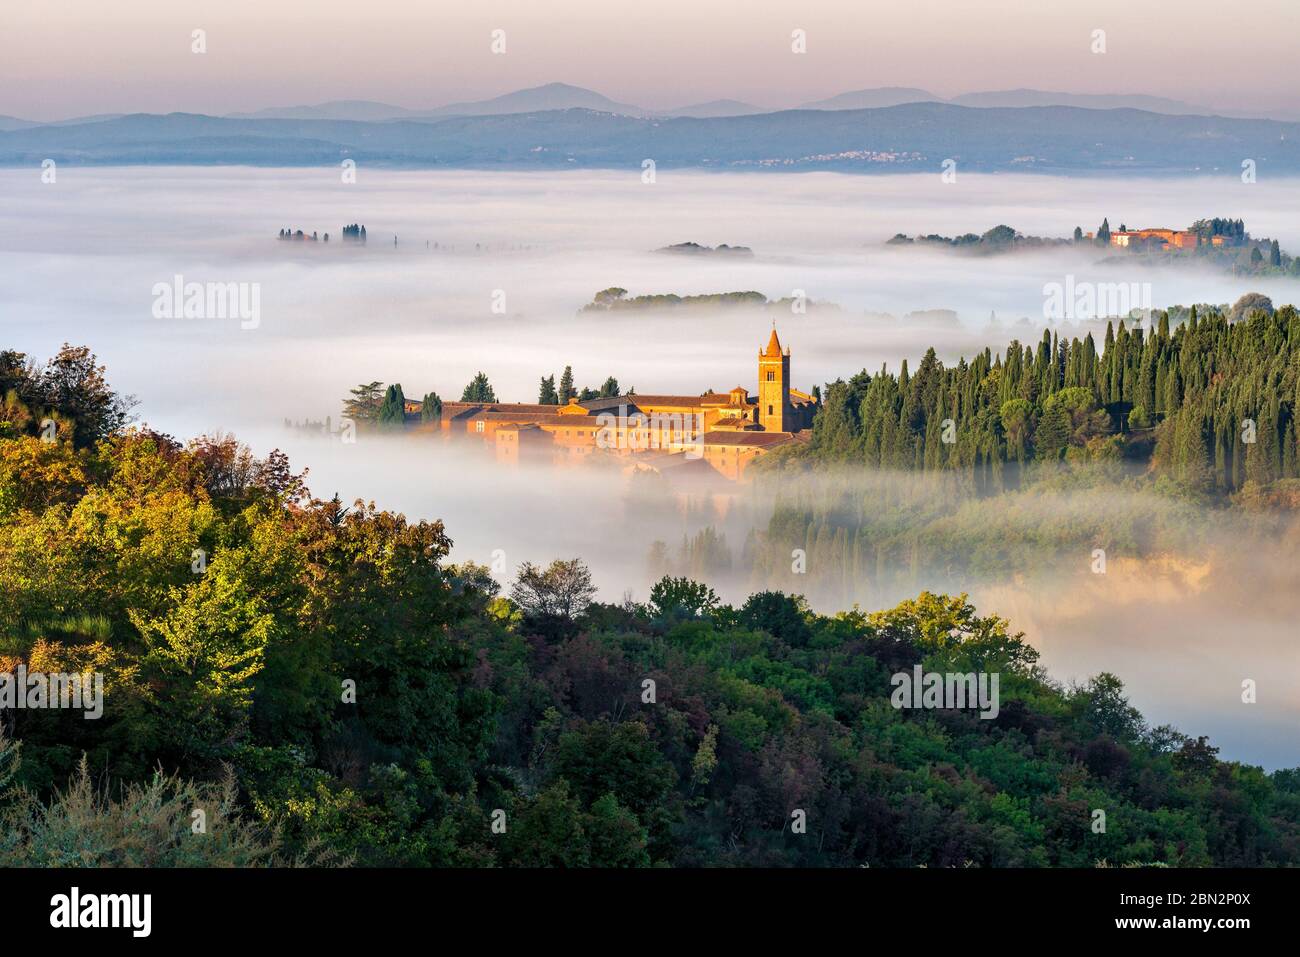 Die Abtei von Monte Oliveto Maggiore sieht aus wie eine Insel in einem Ozean von Morgennebel, crete senesi Landschaft, Siena, Italien Stockfoto